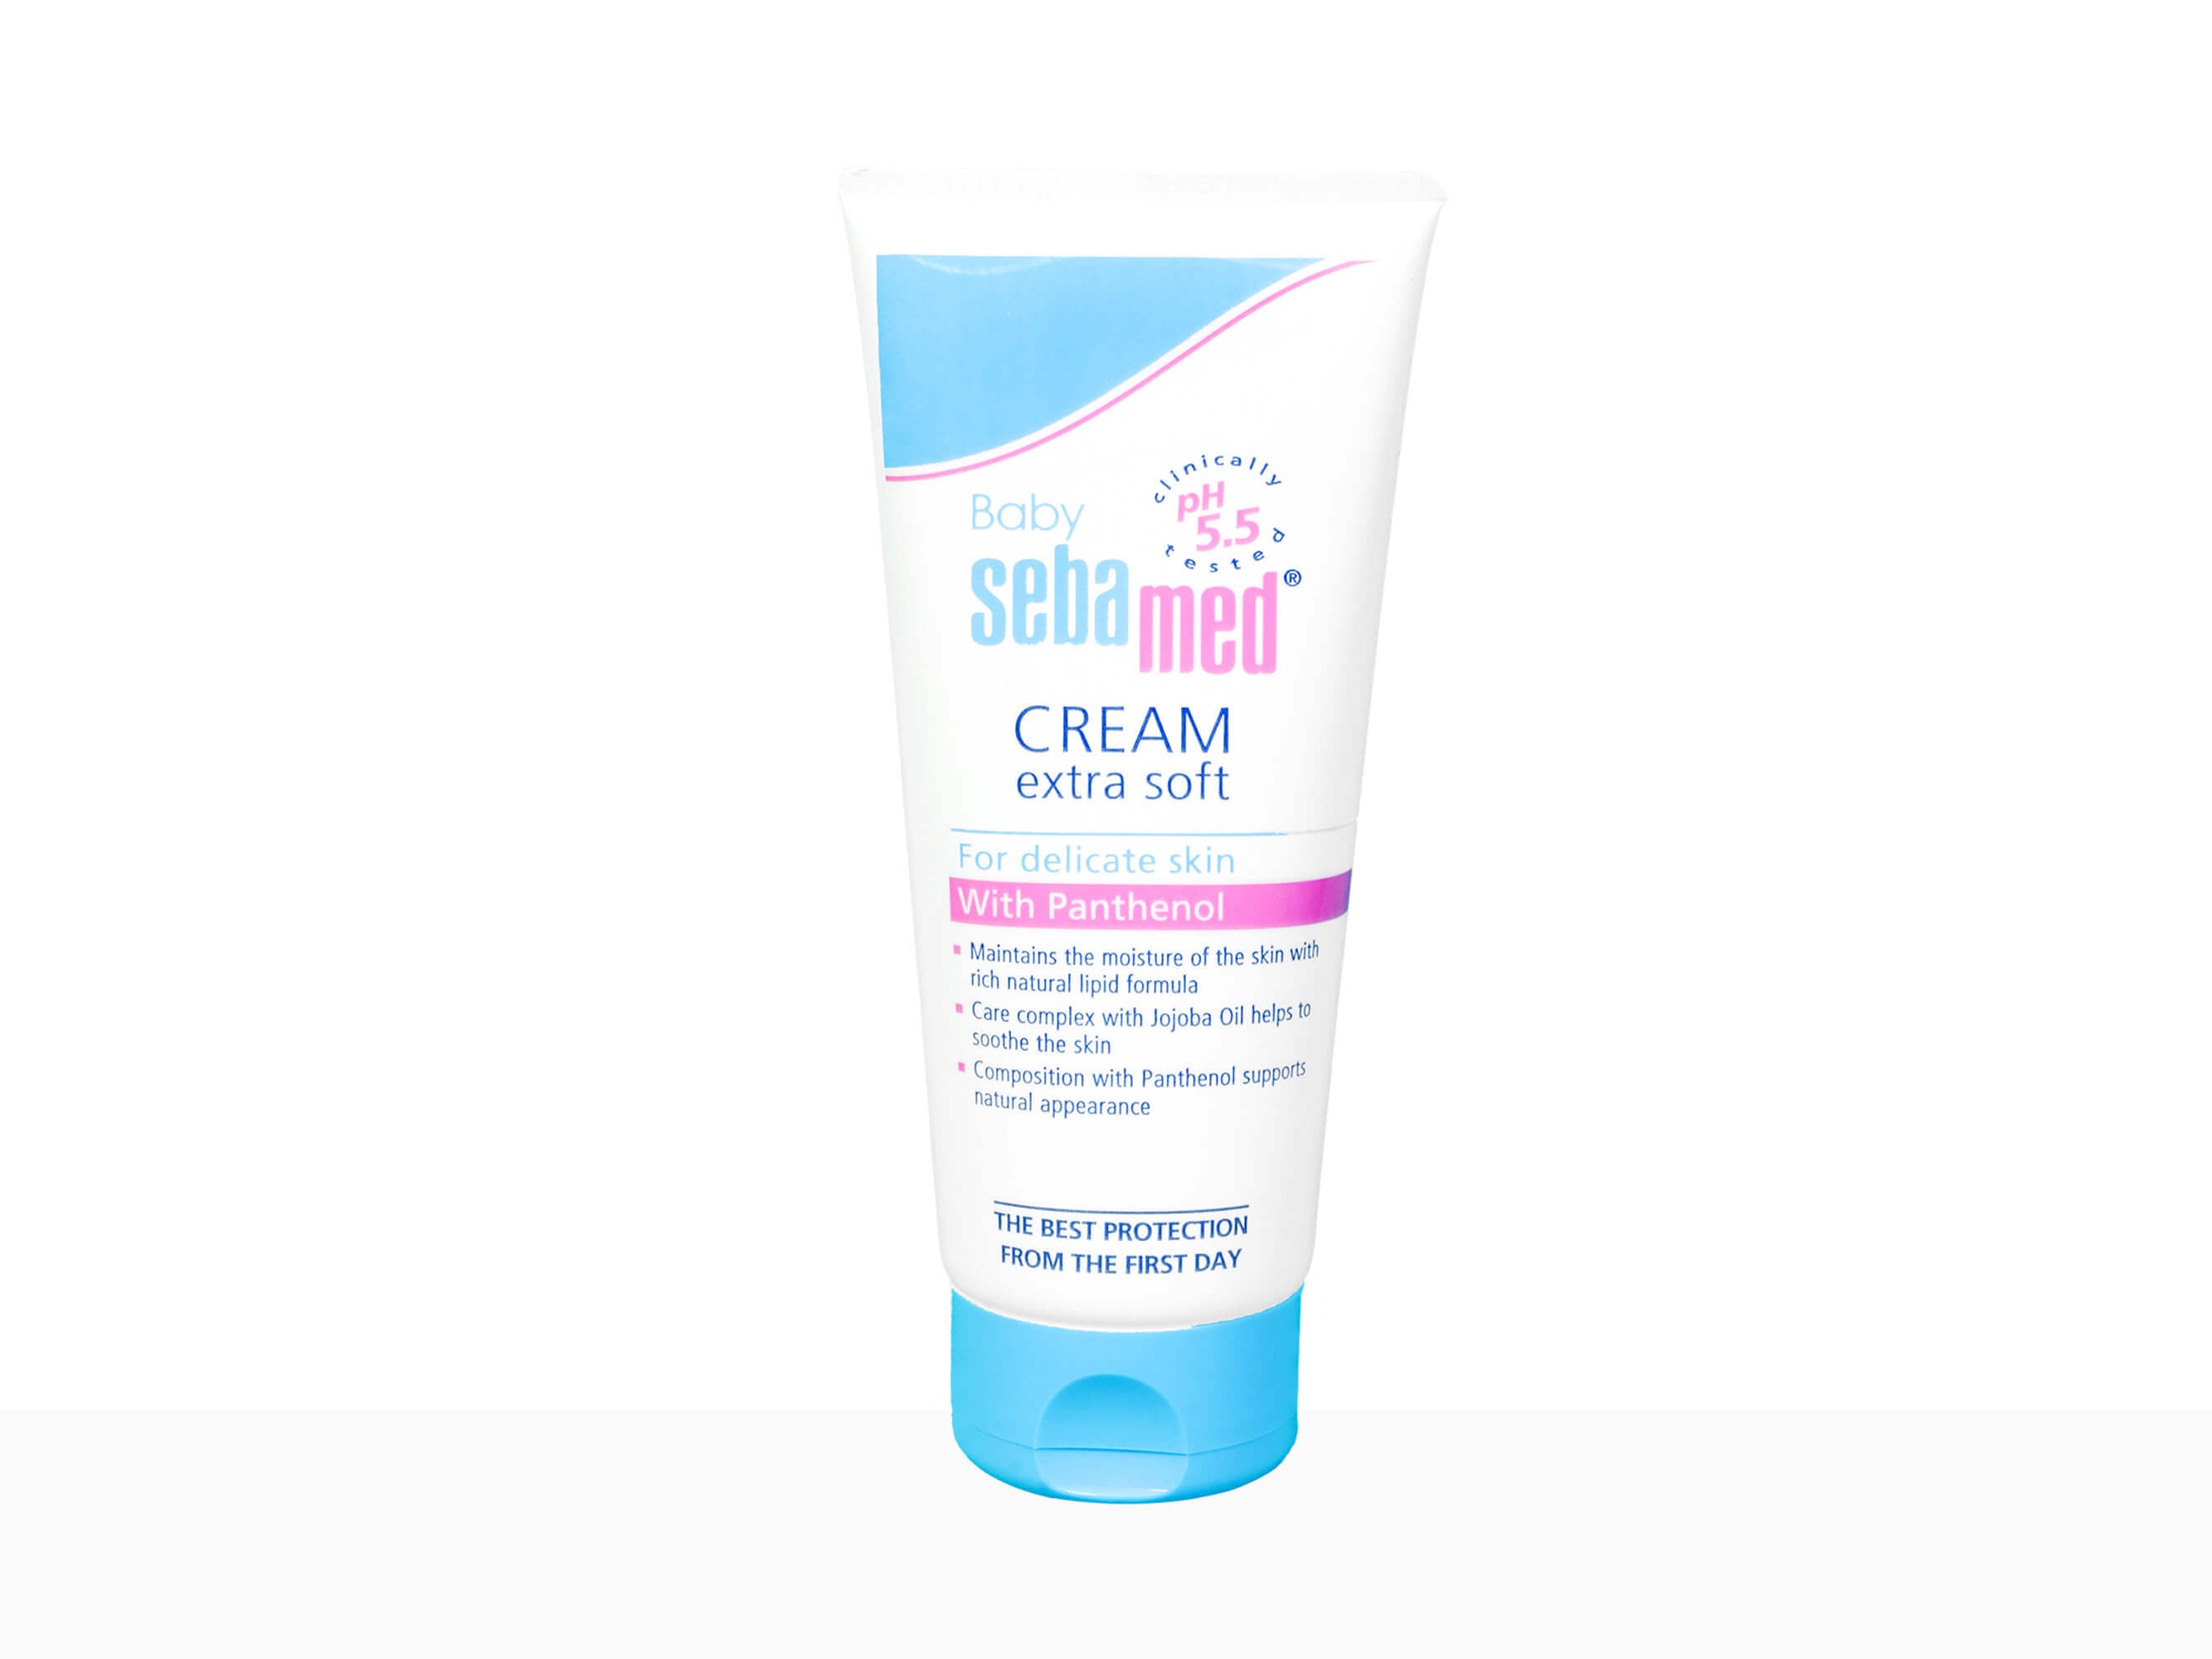 Sebamed Baby Cream Extra Soft - Clinikallly